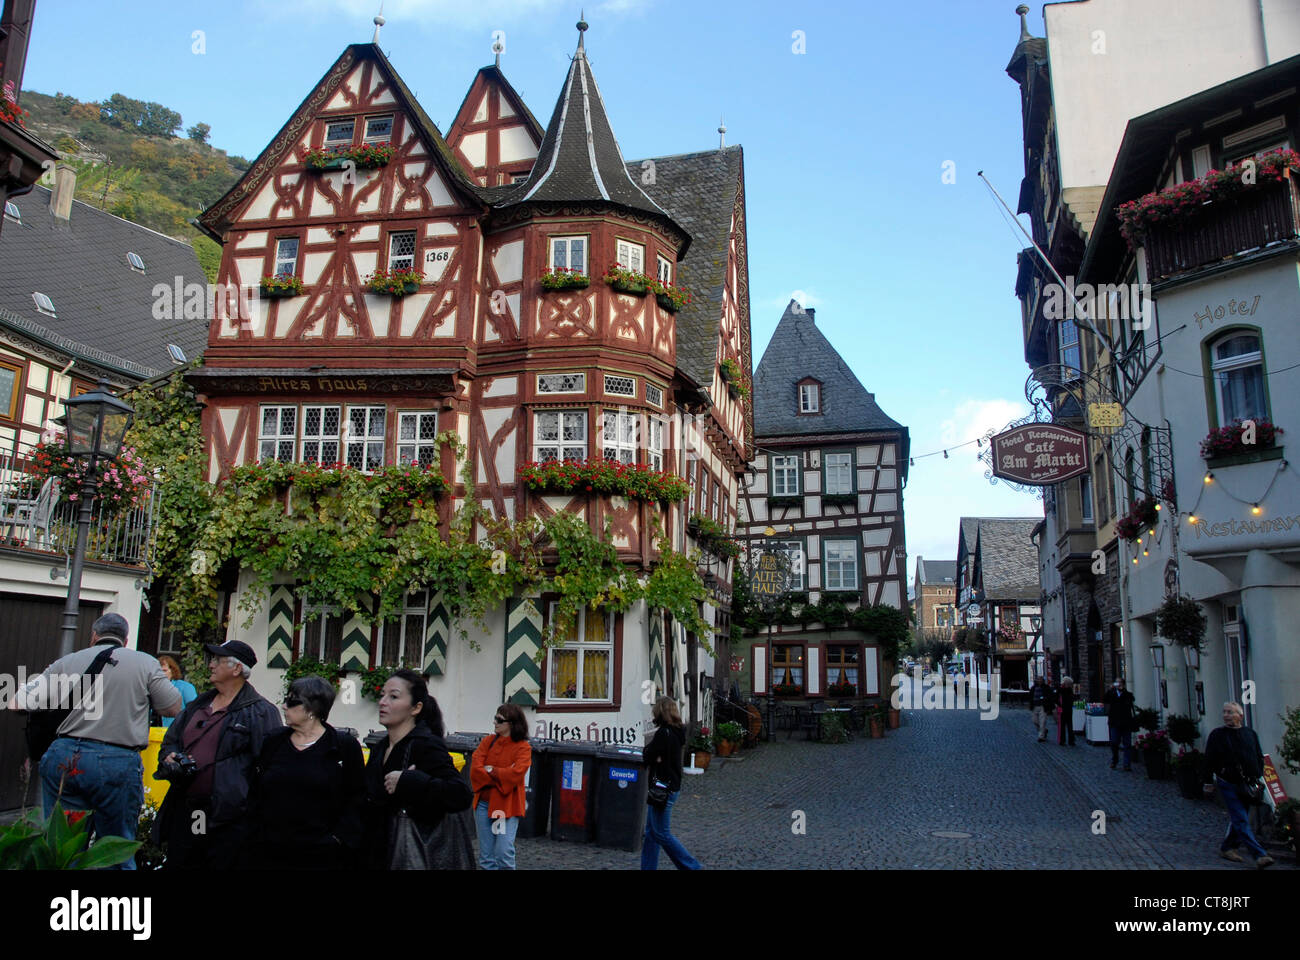 La ville de Bacharach dans la gorge de la rivière du Rhin, Allemagne Banque D'Images